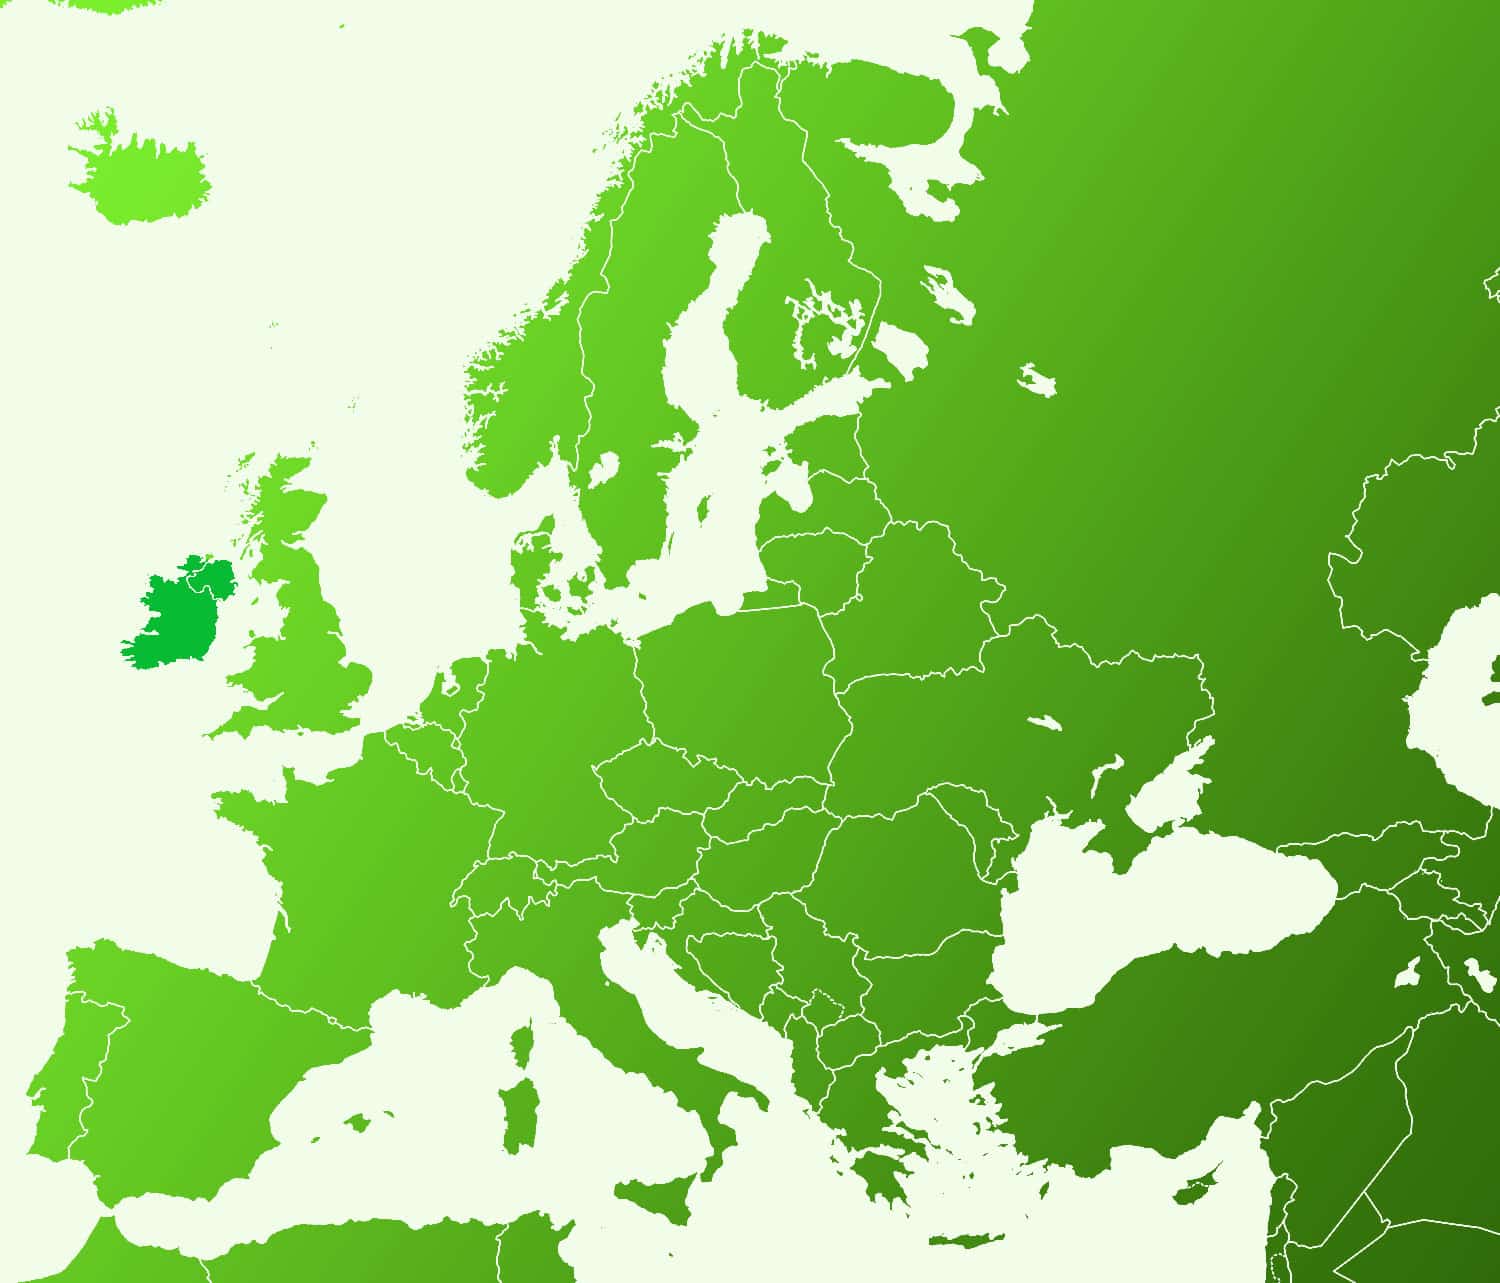 Irish map of europe